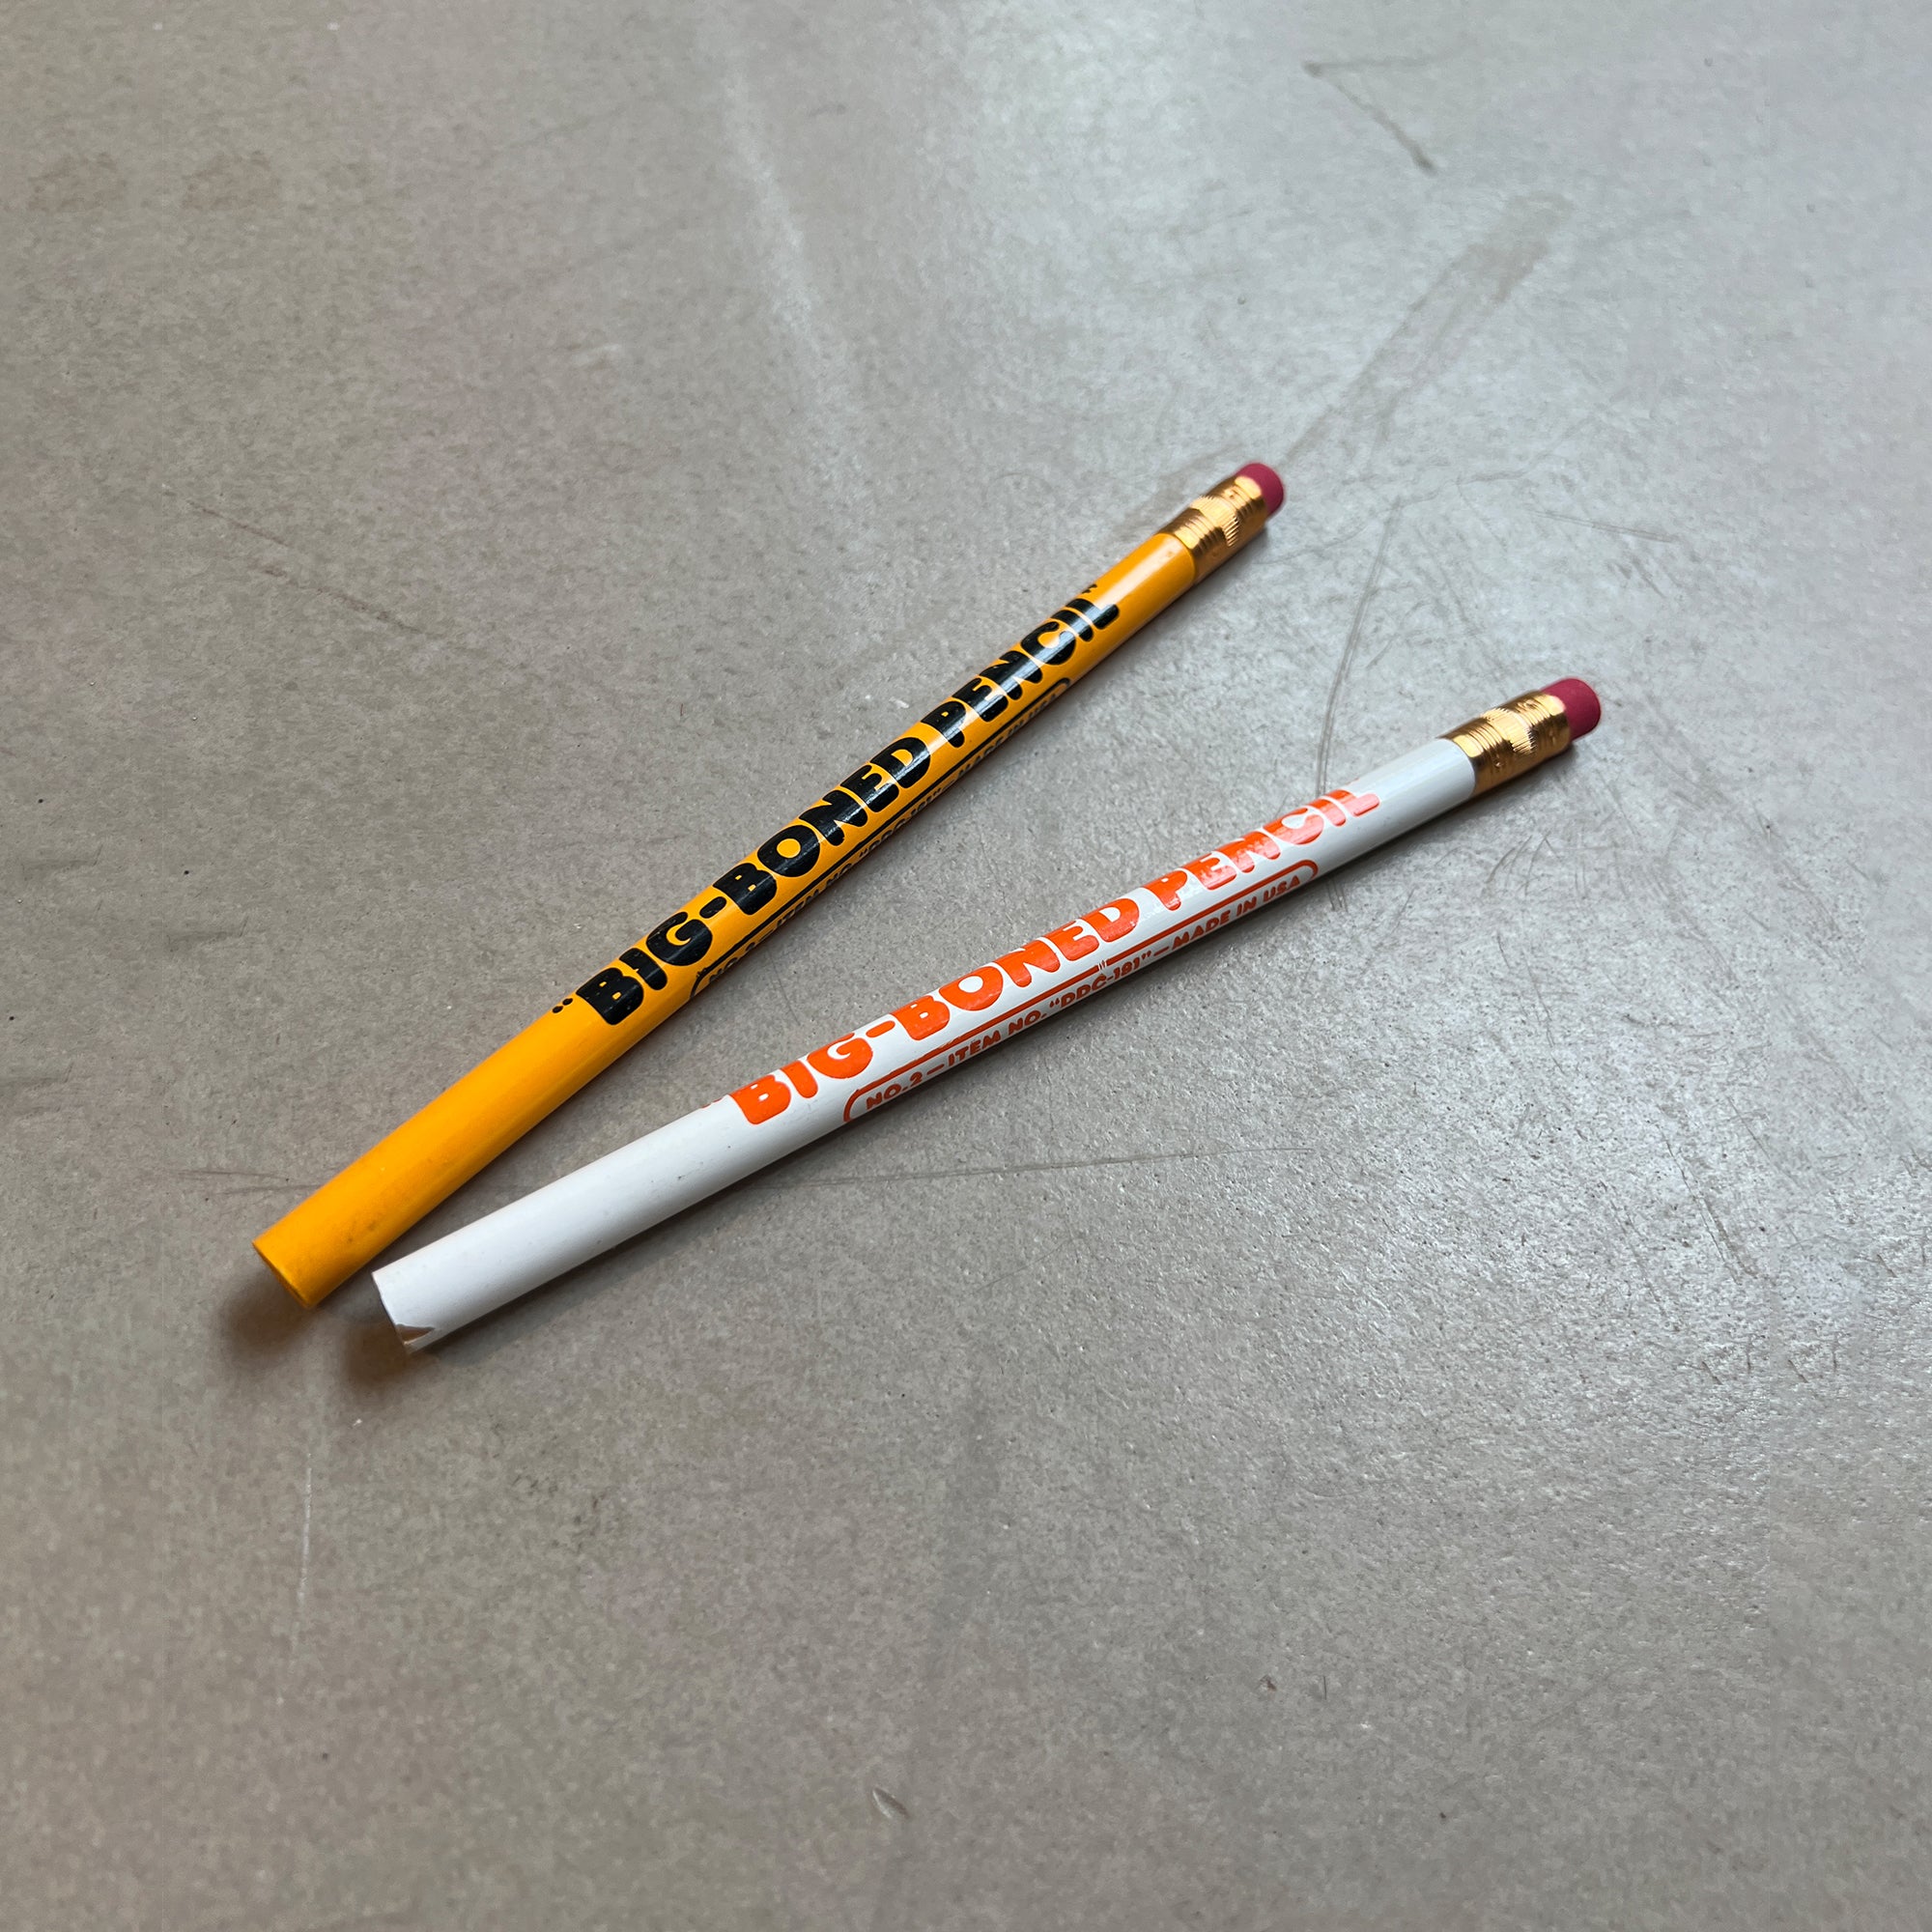 DDC-181 "Big-Boned Pencil"